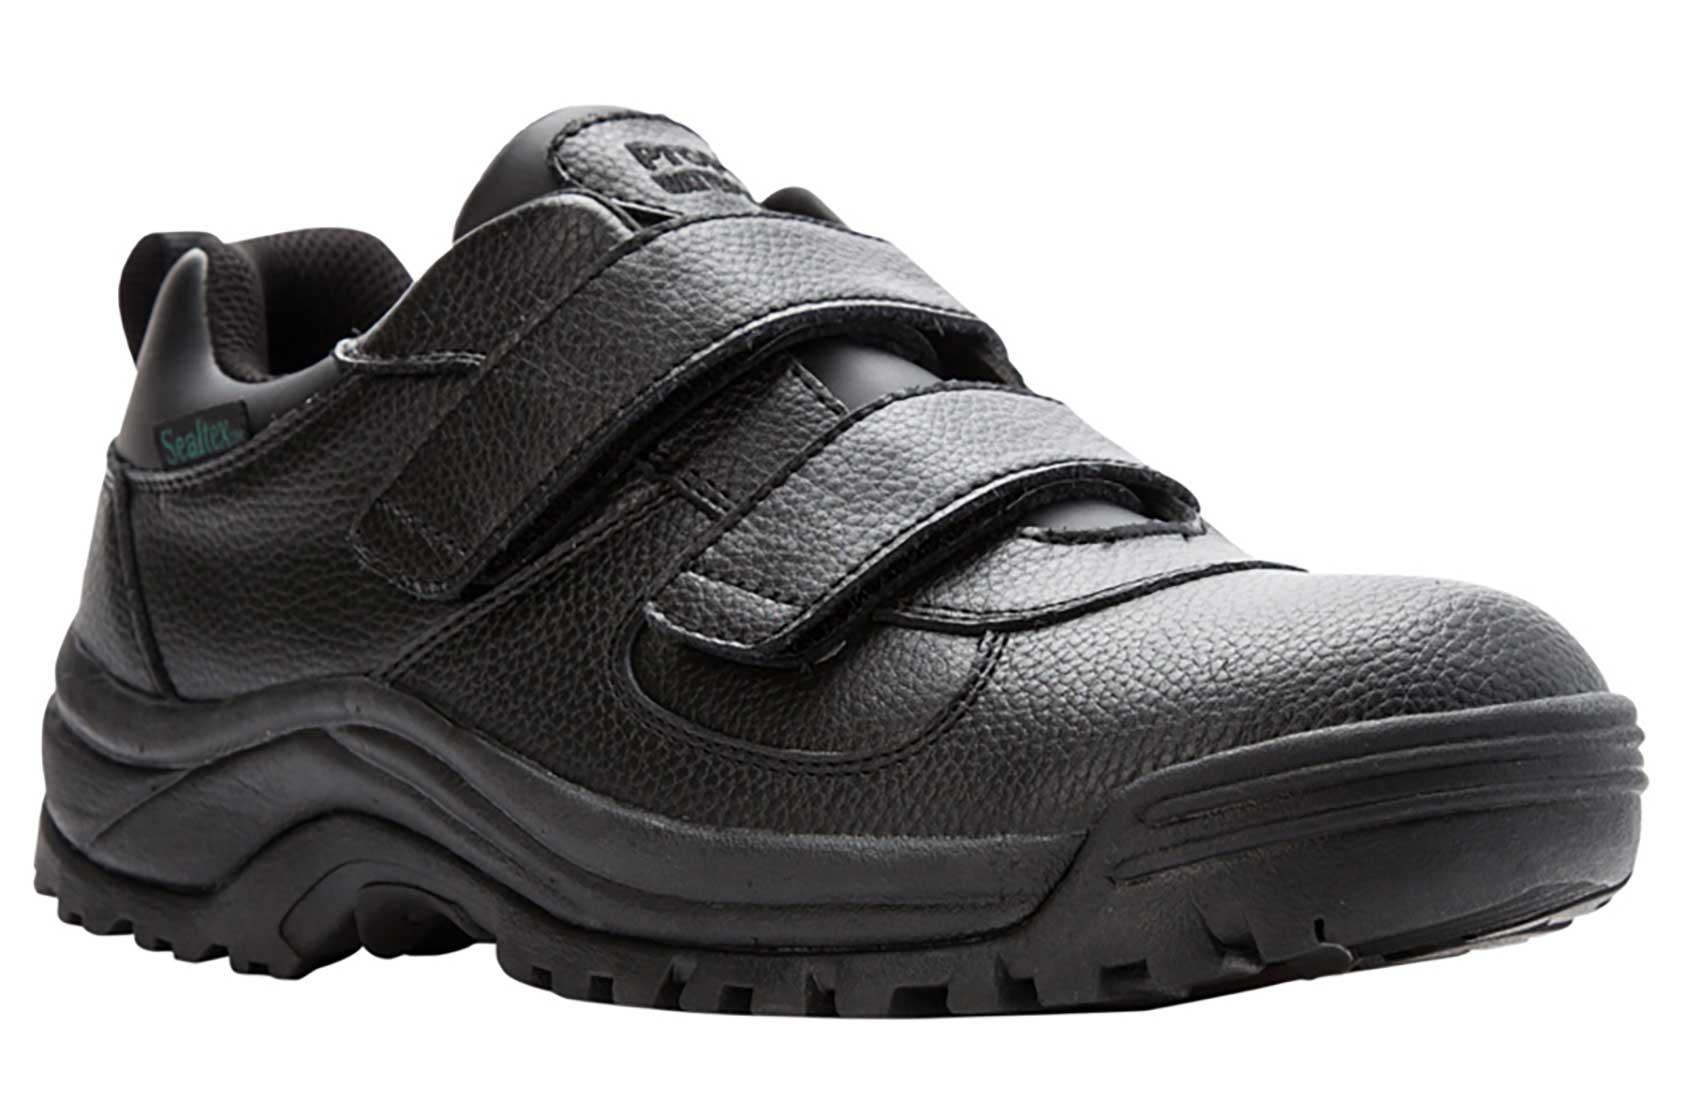 Propet Men's Cliff Walker Low Strap Waterproof Walking Shoe Black Leather - MBA023LBLK - image 1 of 2